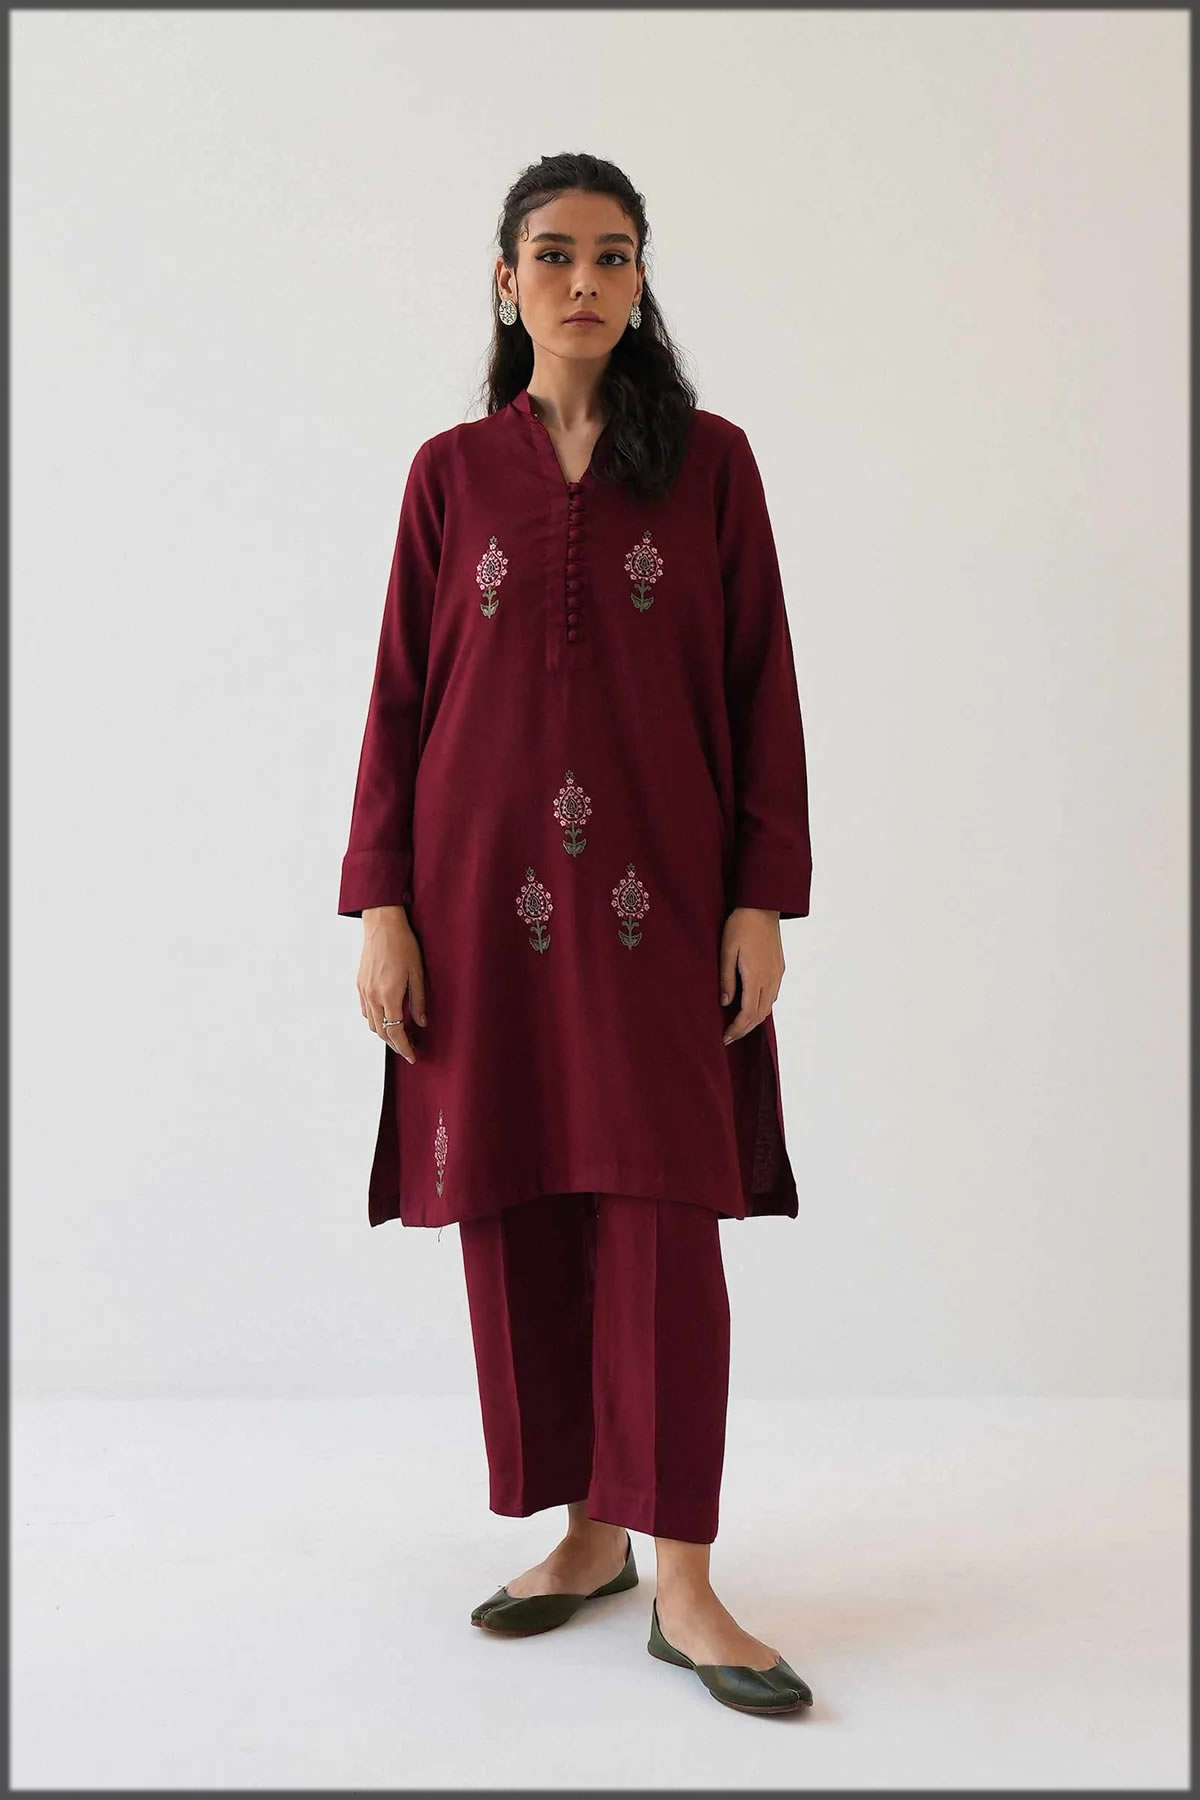 zara basic suit for women